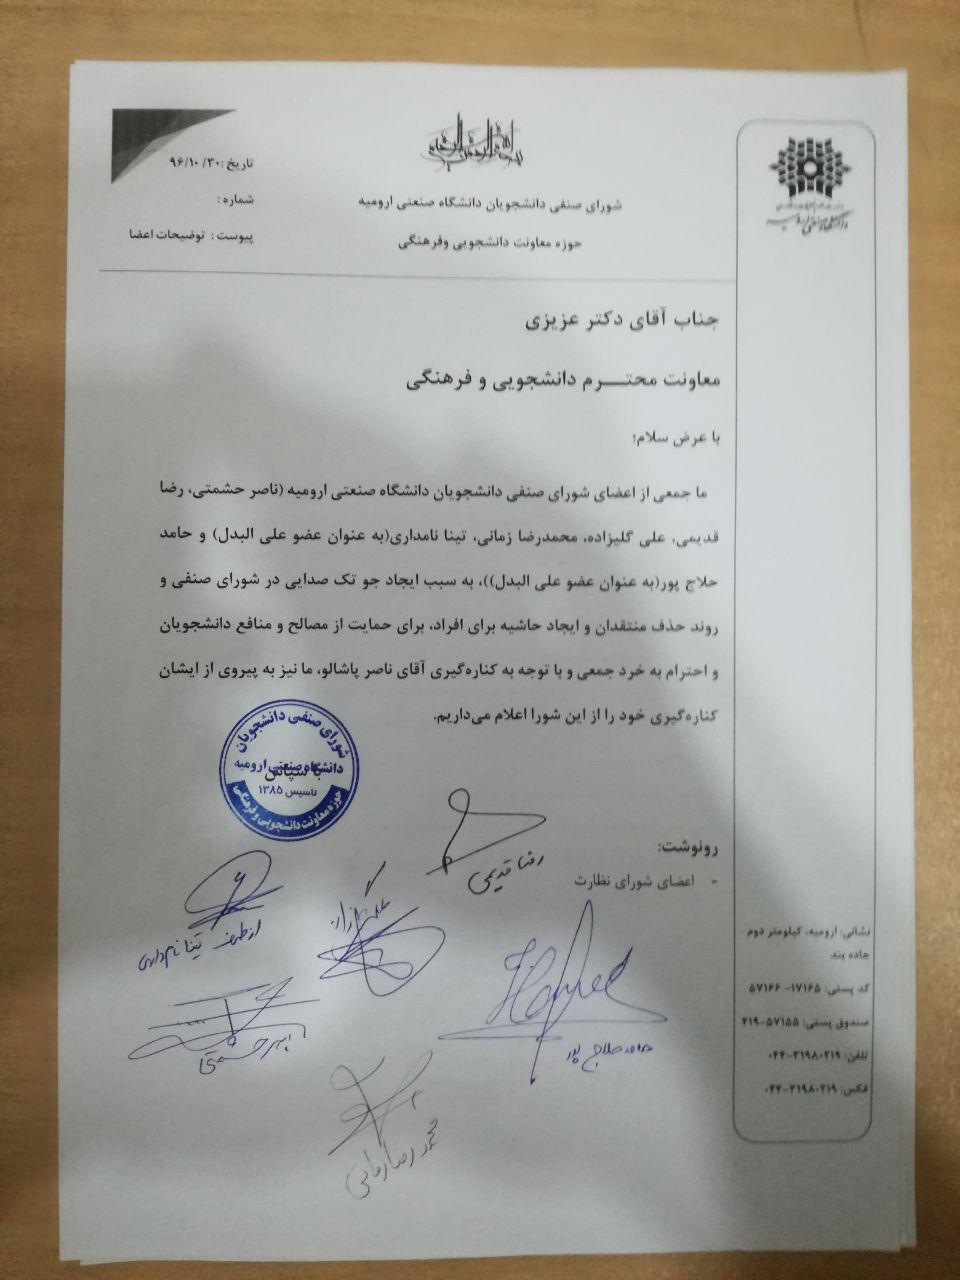 شورای صنفی دانشگاه صنعتی ارومیه دسته جمعی استعفا دادند/ اعضای جدید کمیسیون های شورای صنفی مشخص شد